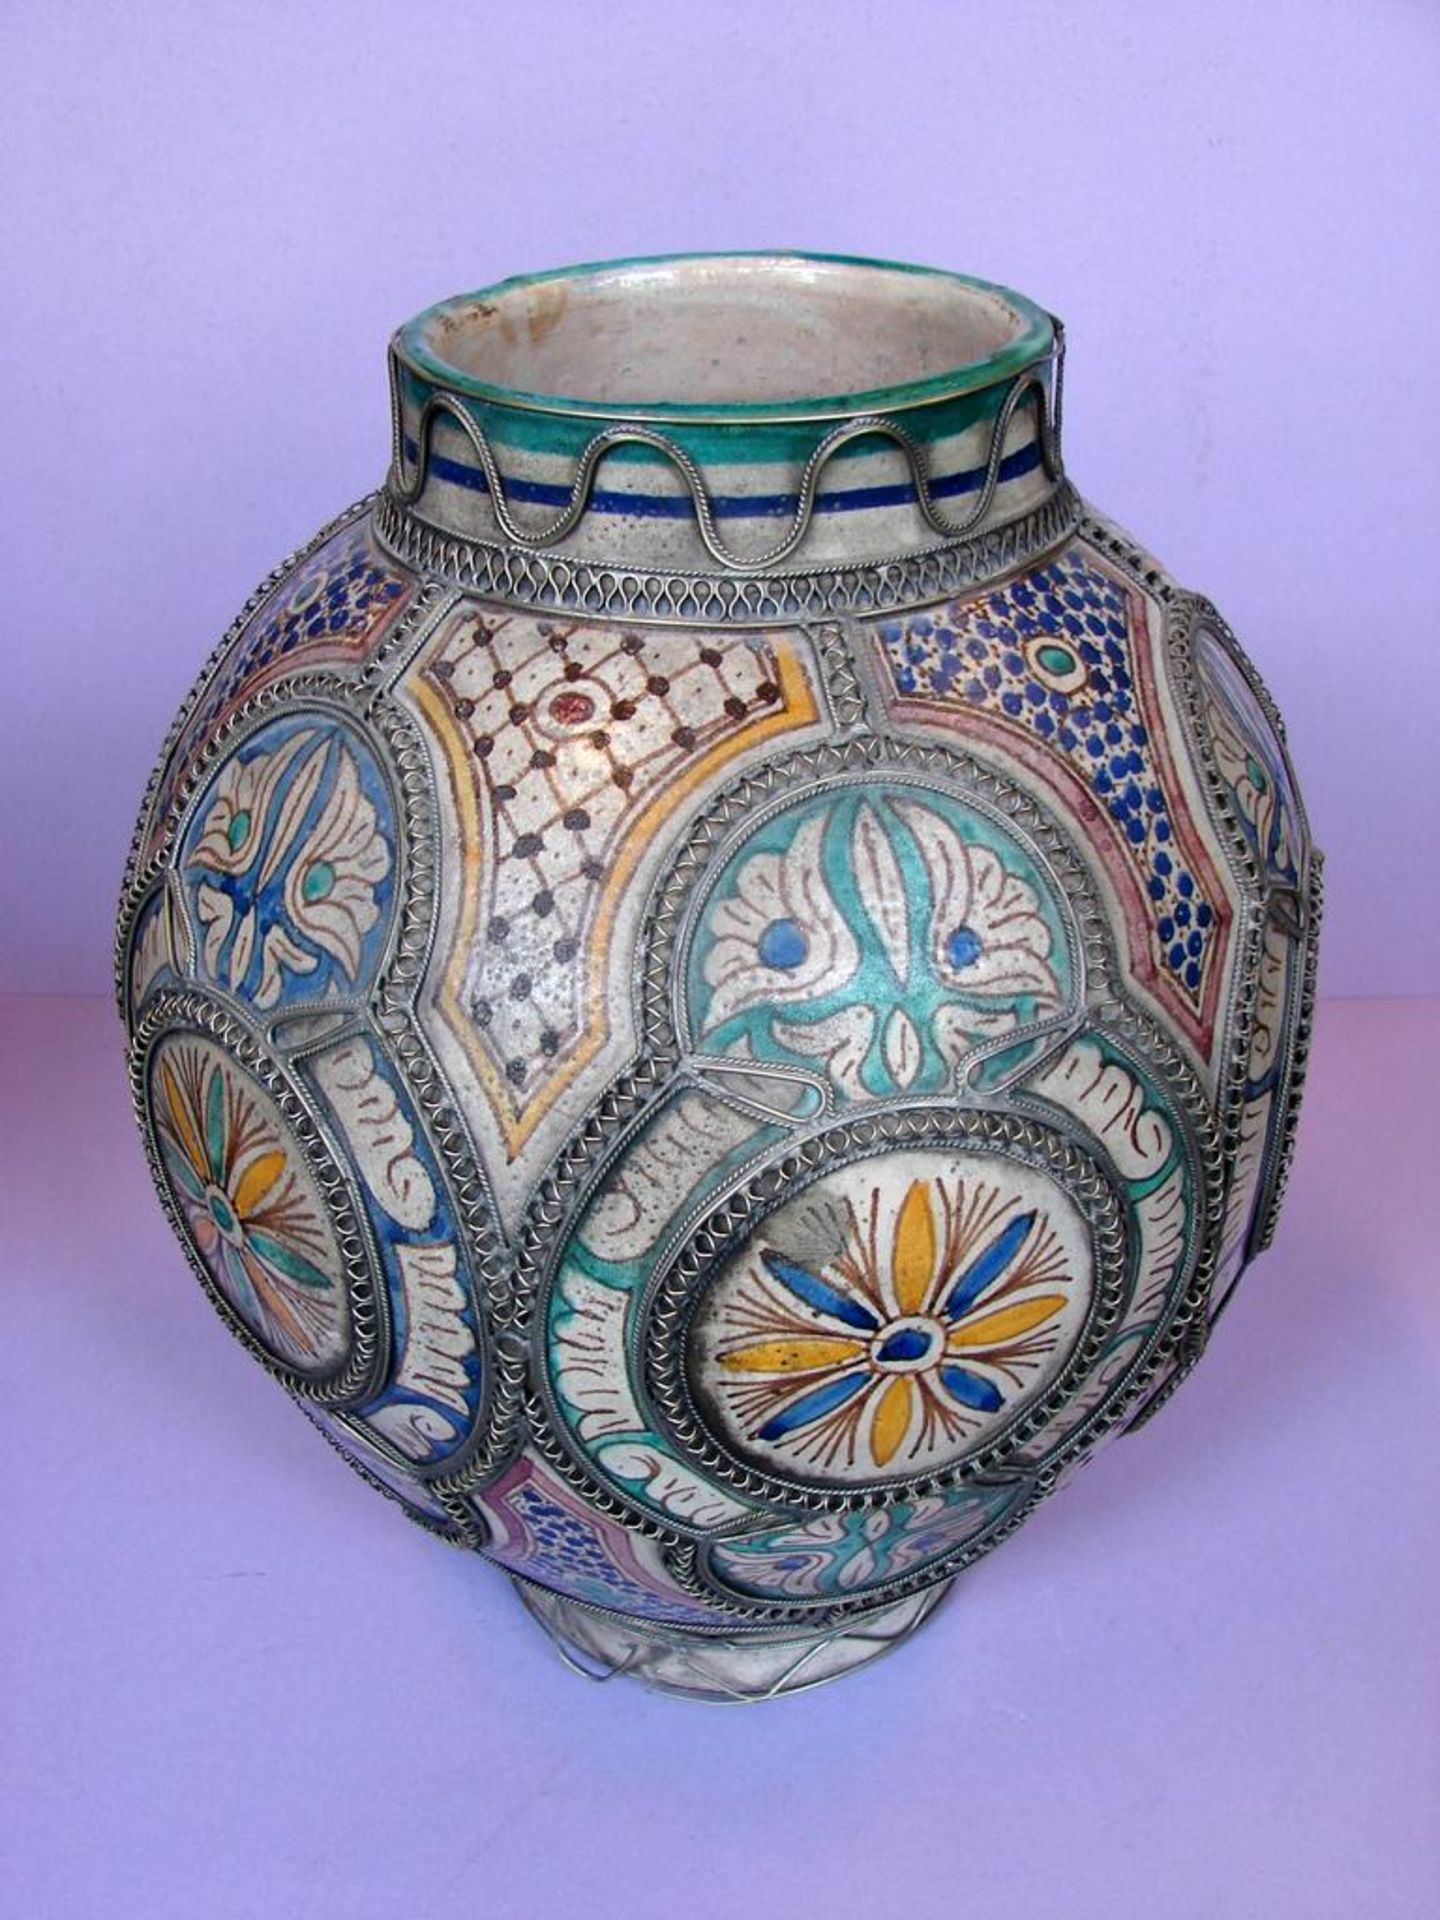 Vase, Metallverzierungen, blau/gelb/grüner Dekor, Höhe ca. 42 cm, leichte Glasurabplatzung am Rand